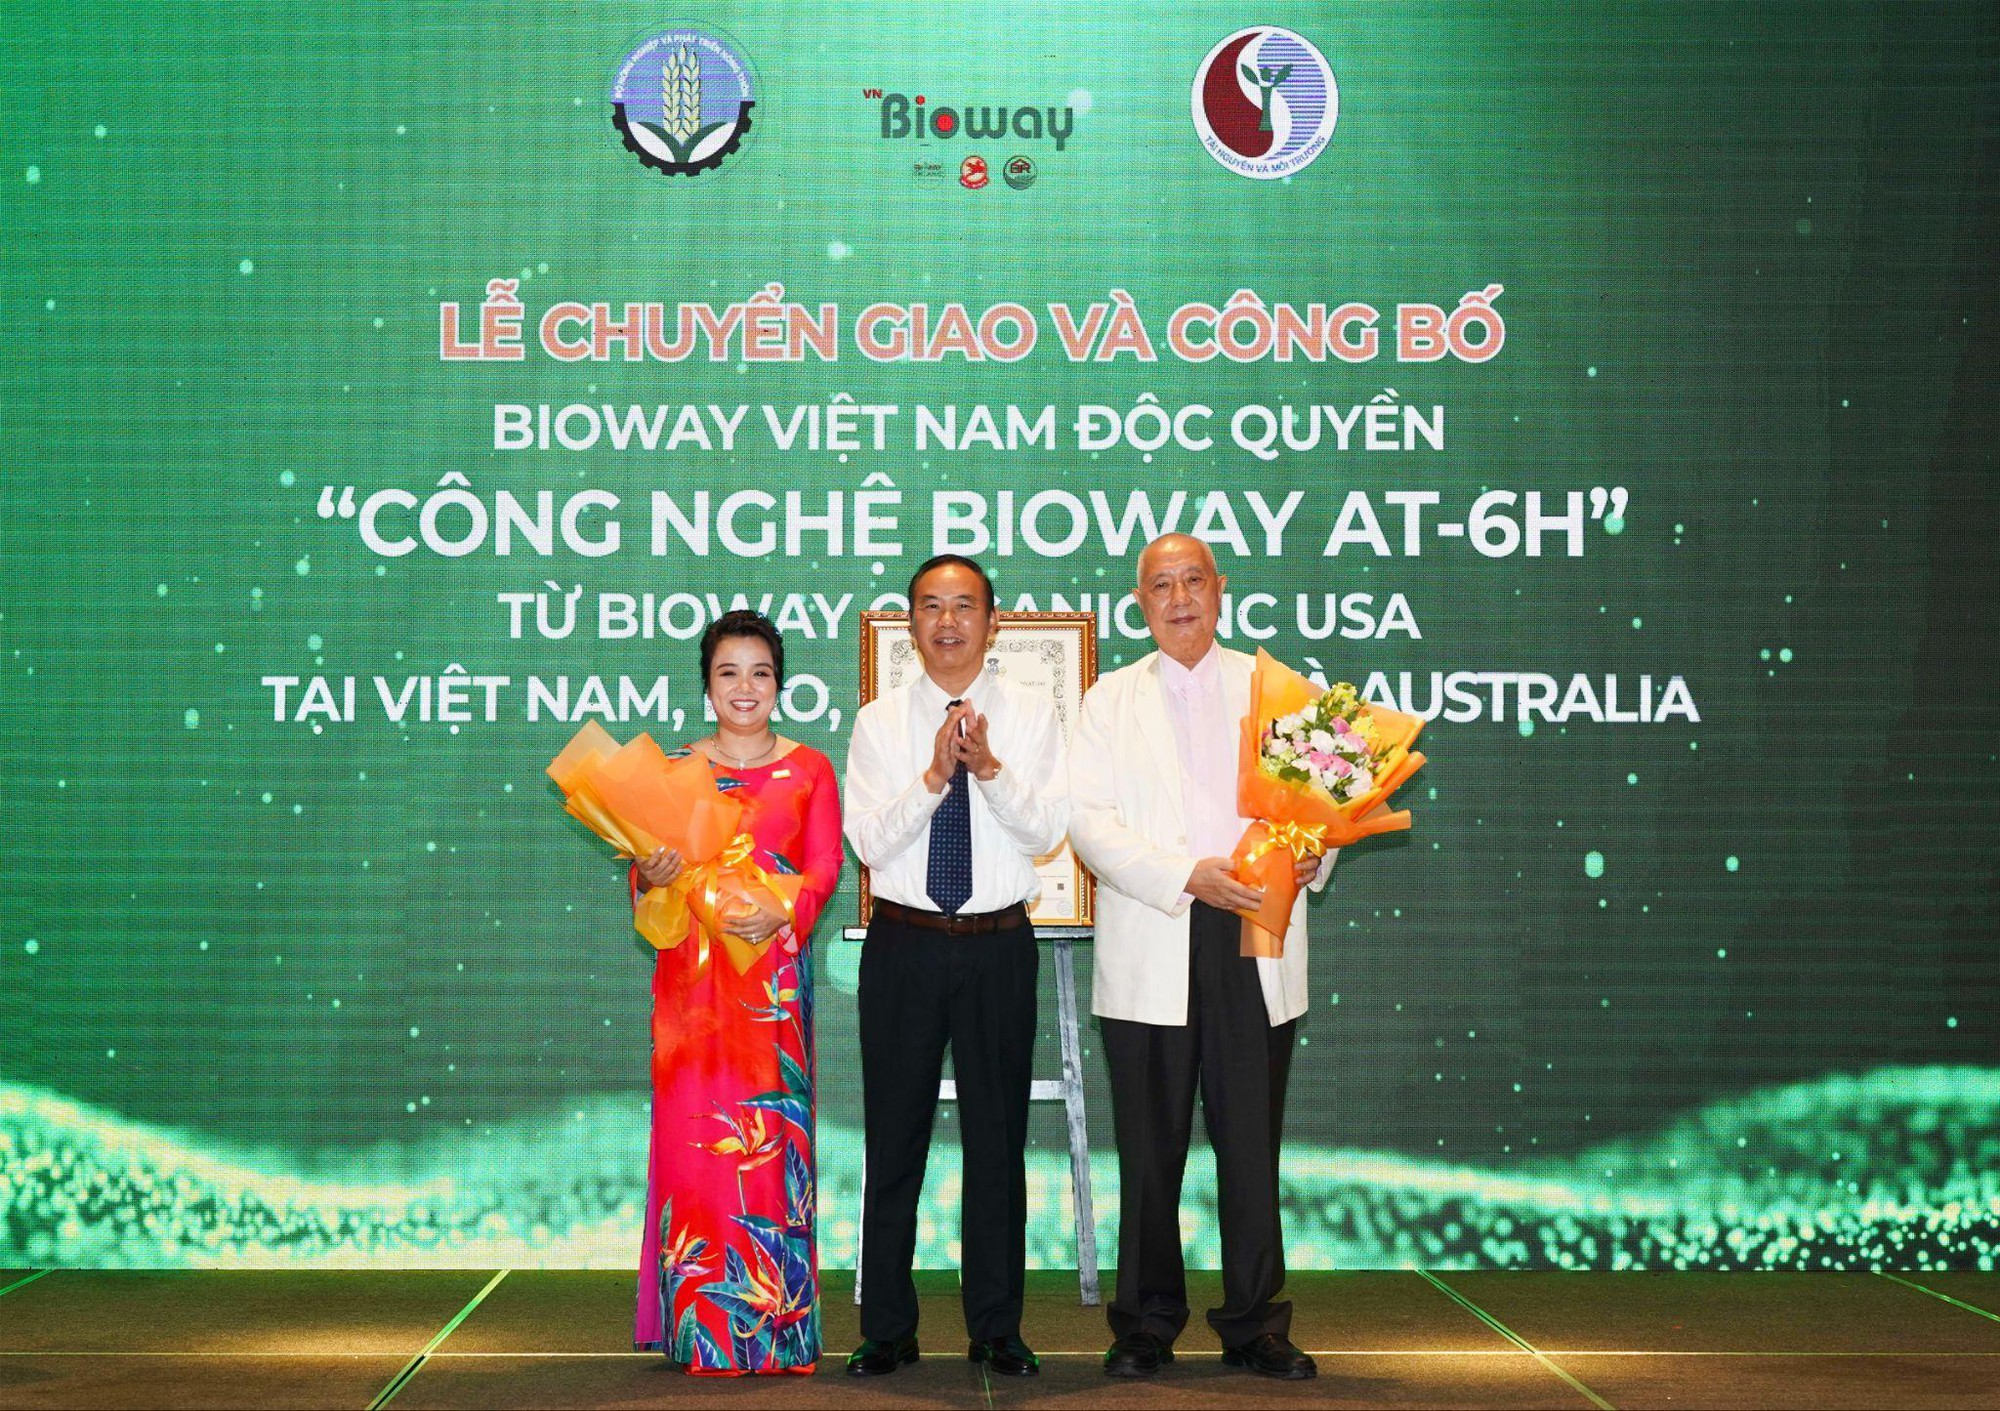 Bioway Việt Nam chú trọng thúc đẩy kinh tế tuần hoàn trong nông nghiệp hướng đến tăng trưởng xanh - Ảnh 5.